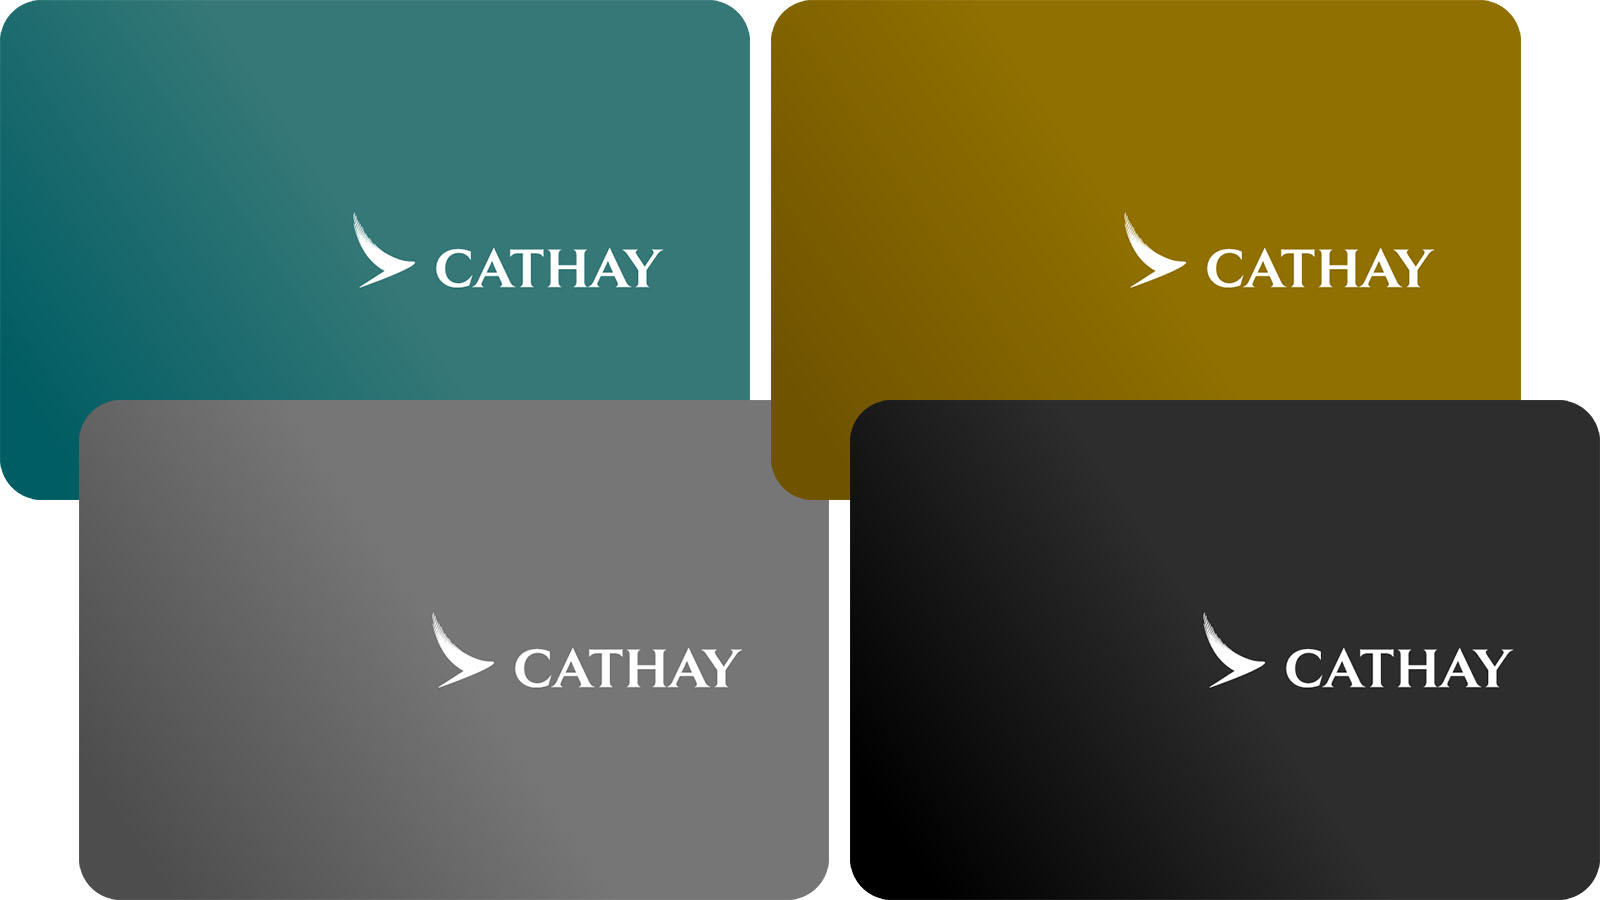 Cathay's main loyalty membership cards